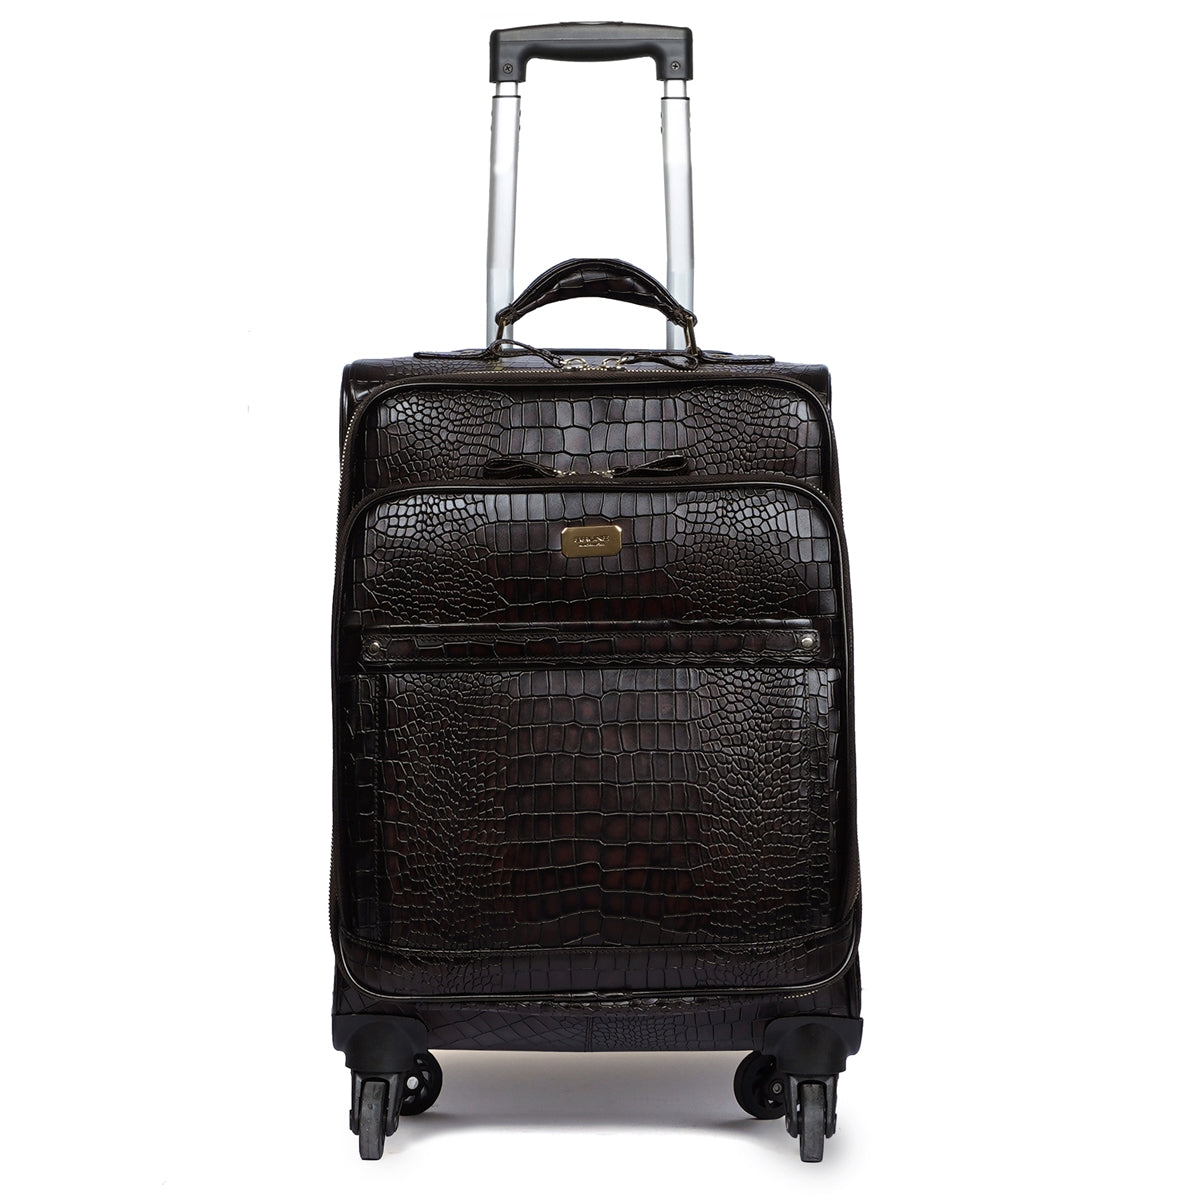 Luxuriously Deep Cut Croco Dark Brown Quad Wheel Cabin Luggage Leather Strolley Travel Bag by Brune & Bareskin